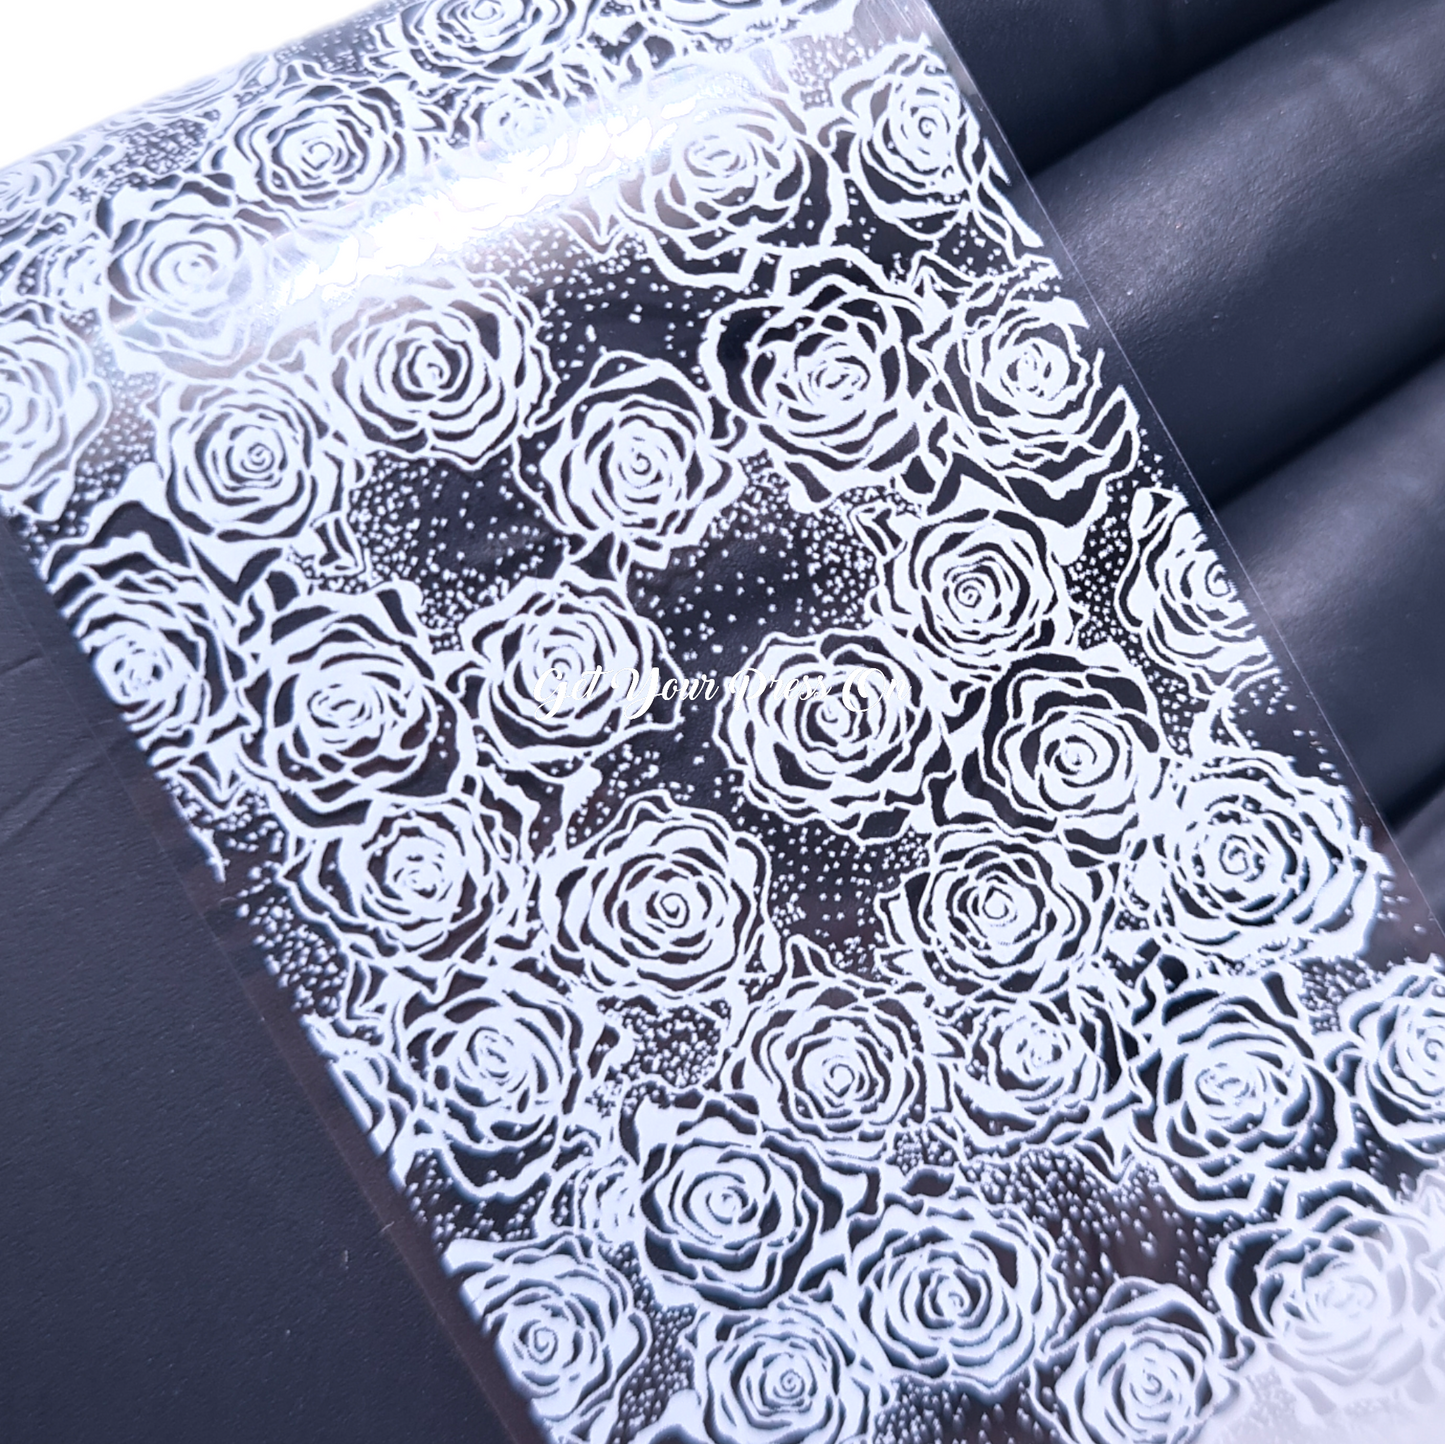 ROSES Lace Transfer Nail Foil FF003 - 1m